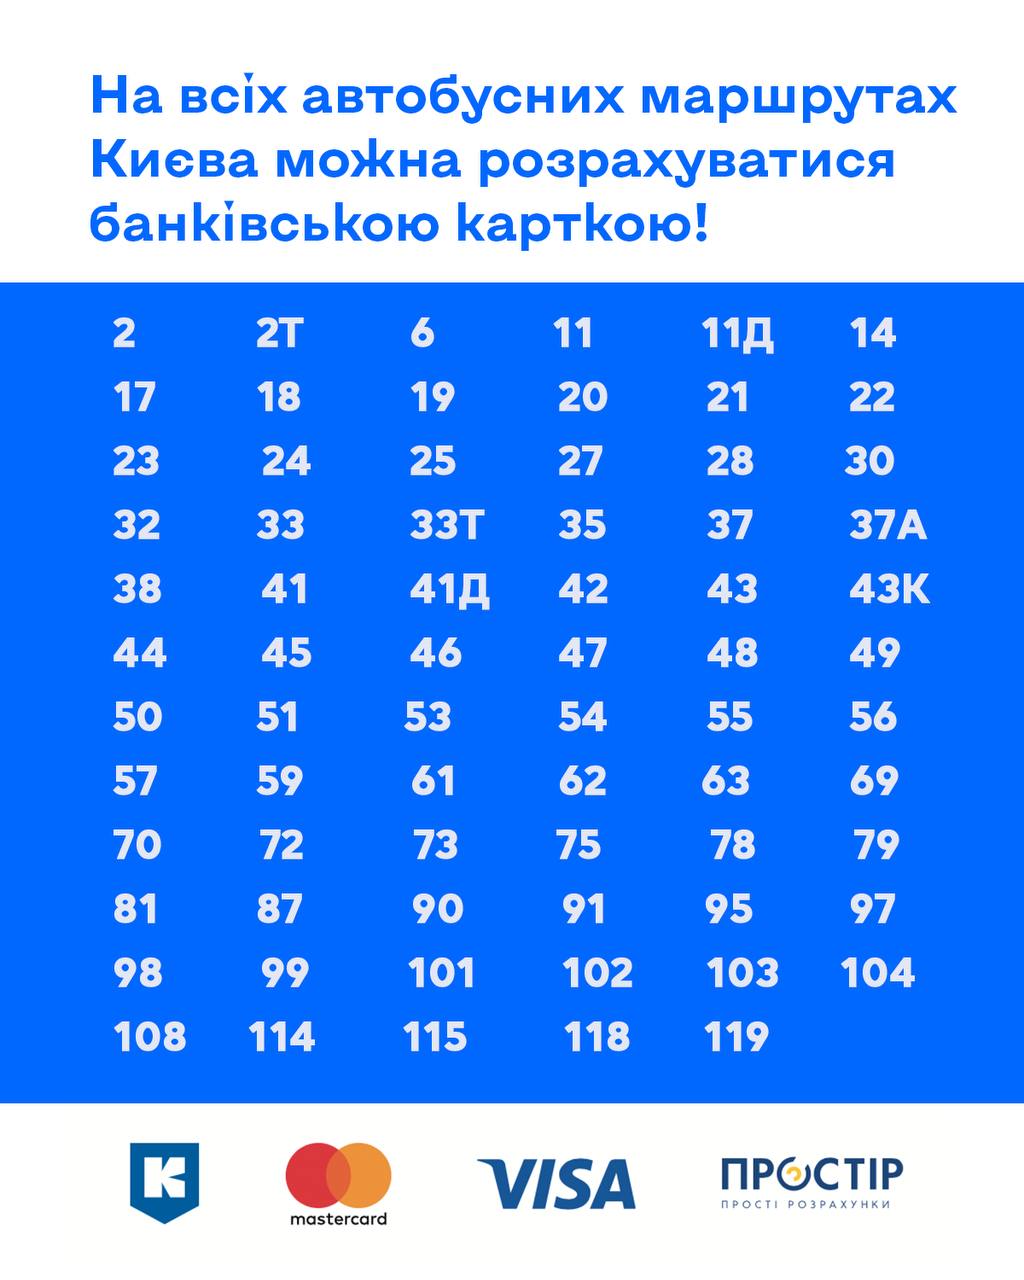 Расплатиться картой в автобусах Киева